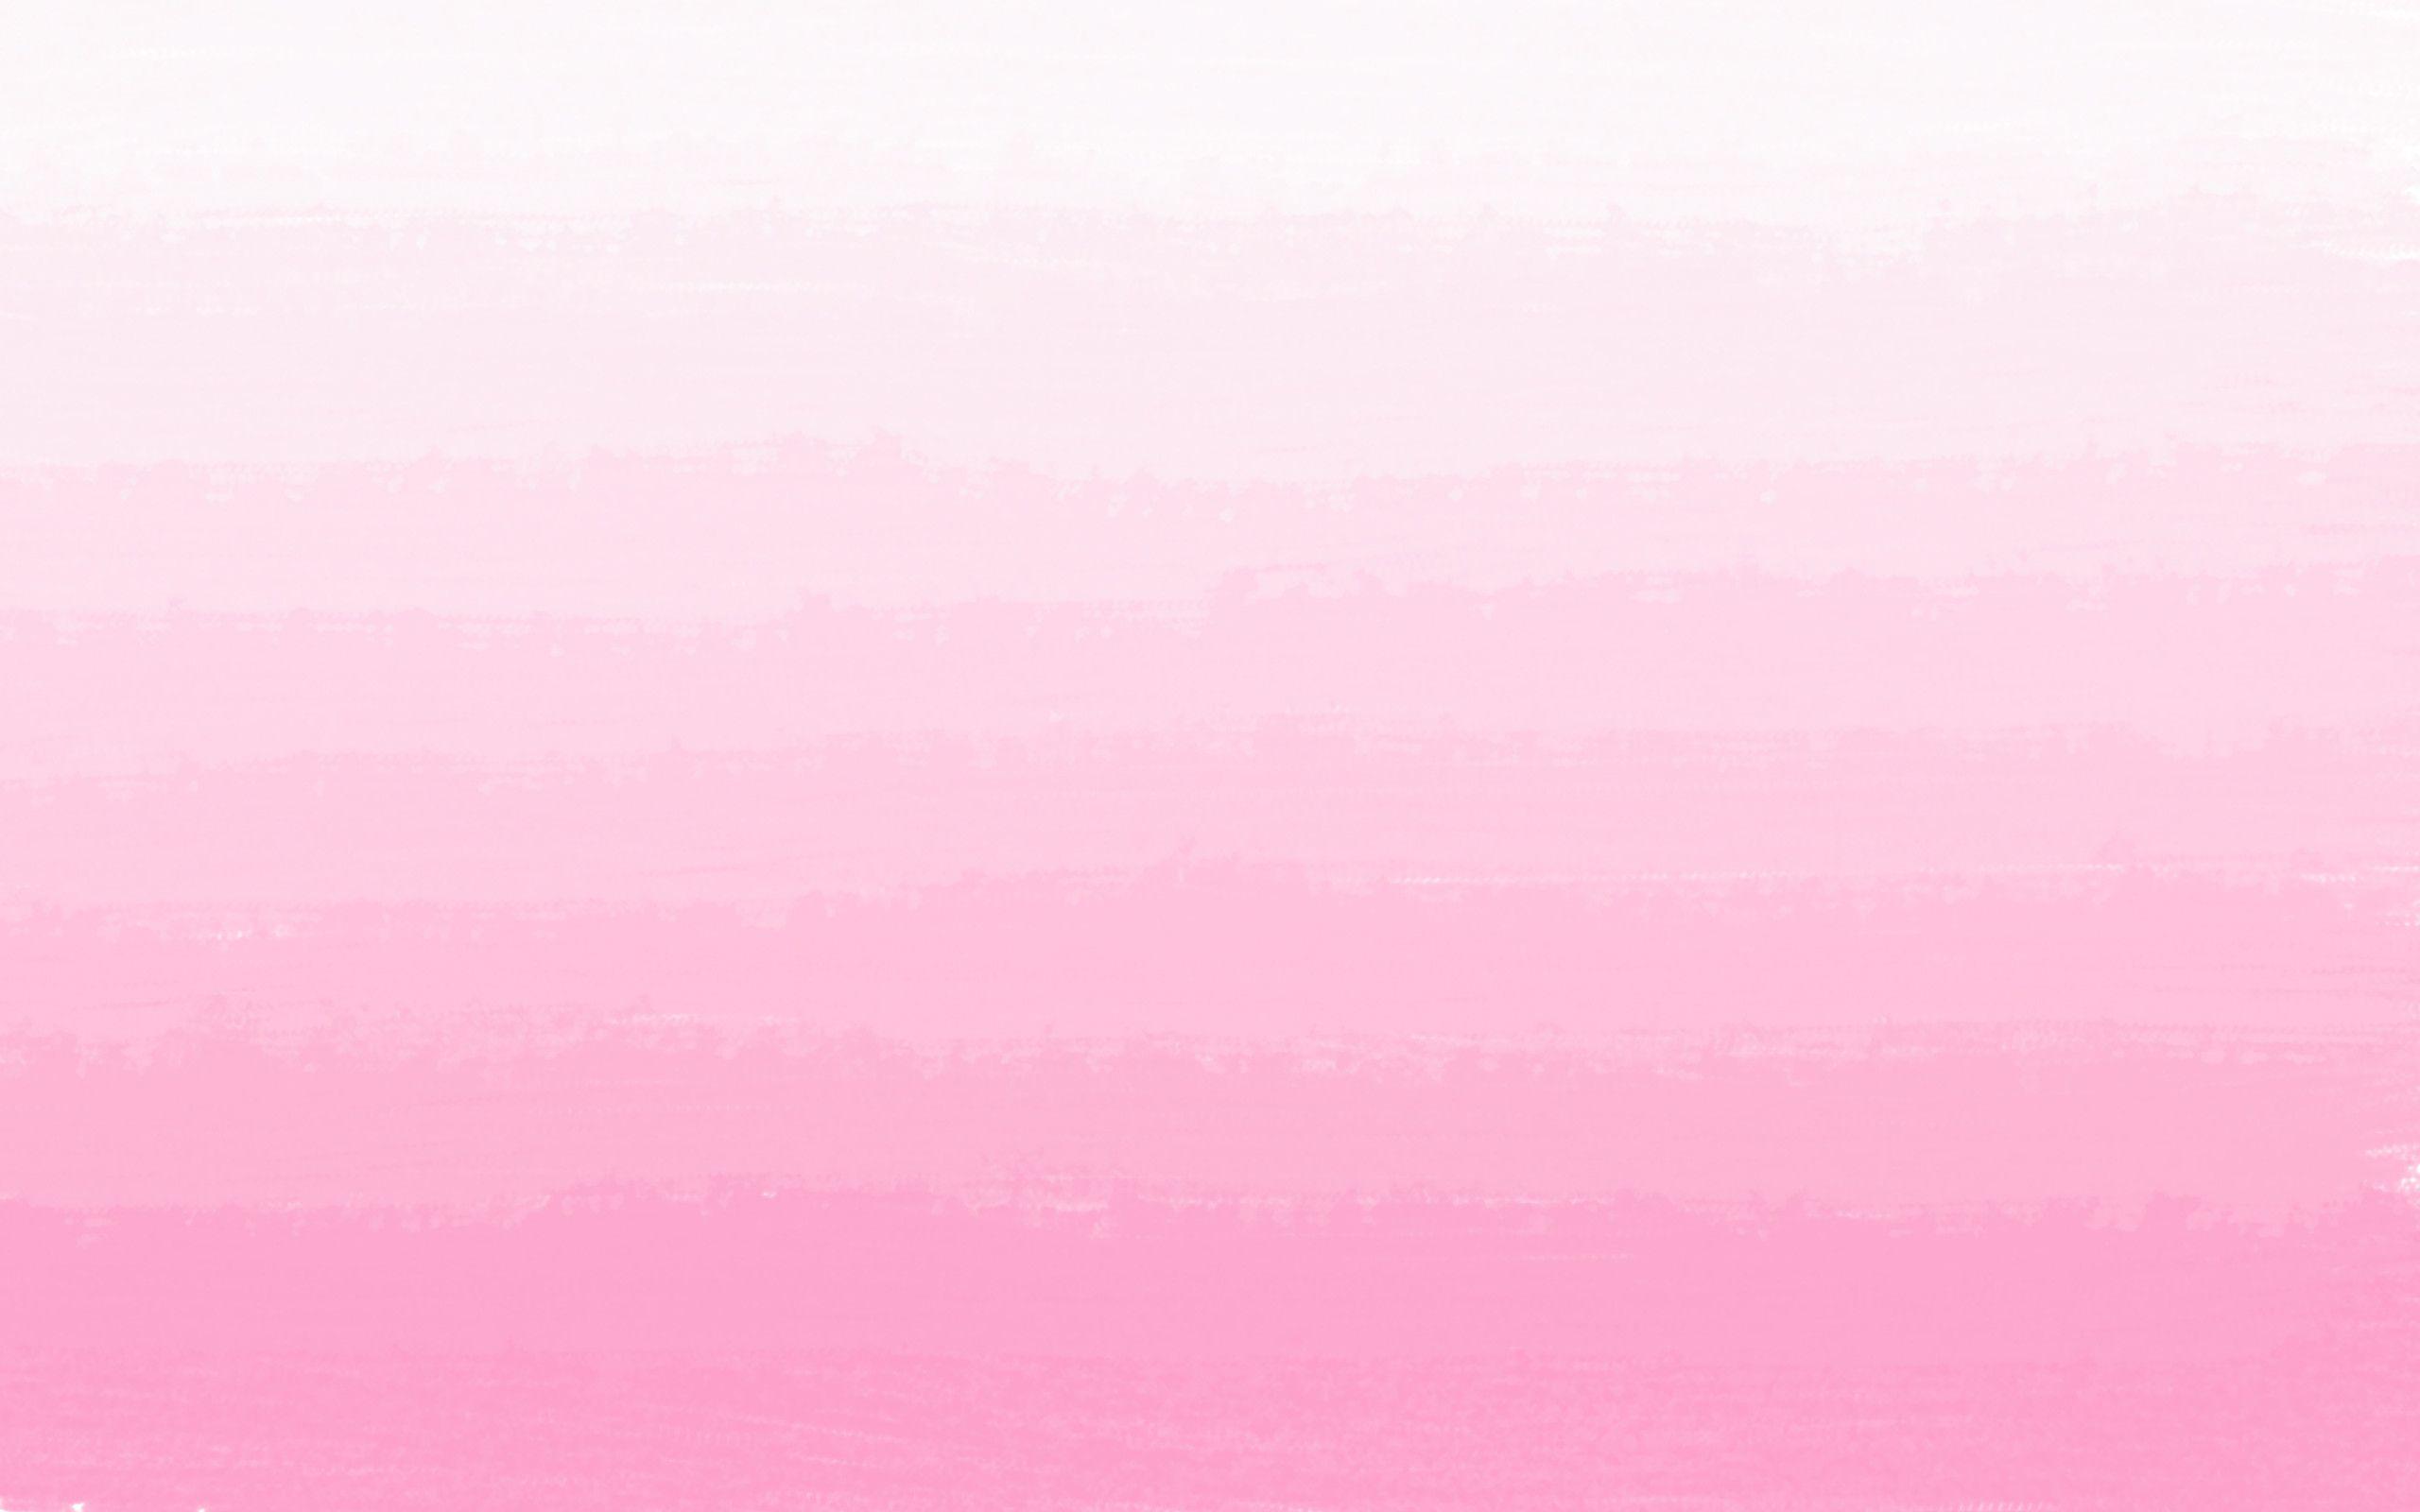 Thưởng thức những bức ảnh nền hồng ombre đẹp như tràn đầy mơ mộng, mang lại sự dịu dàng và nữ tính cho chiếc điện thoại của bạn. Chất liệu phối màu tuyệt đẹp giúp chúng trở nên độc đáo và thu hút mọi ánh nhìn. Hãy xem ngay những hình nền này để trang trí cho màn hình điện thoại của bạn. Translation: Enjoy the dreamy and feminine pink ombre wallpapers that bring a gentle touch to your phone. The beautiful color combinations make them unique and eye-catching. Check out these wallpapers now to decorate your phone screen.